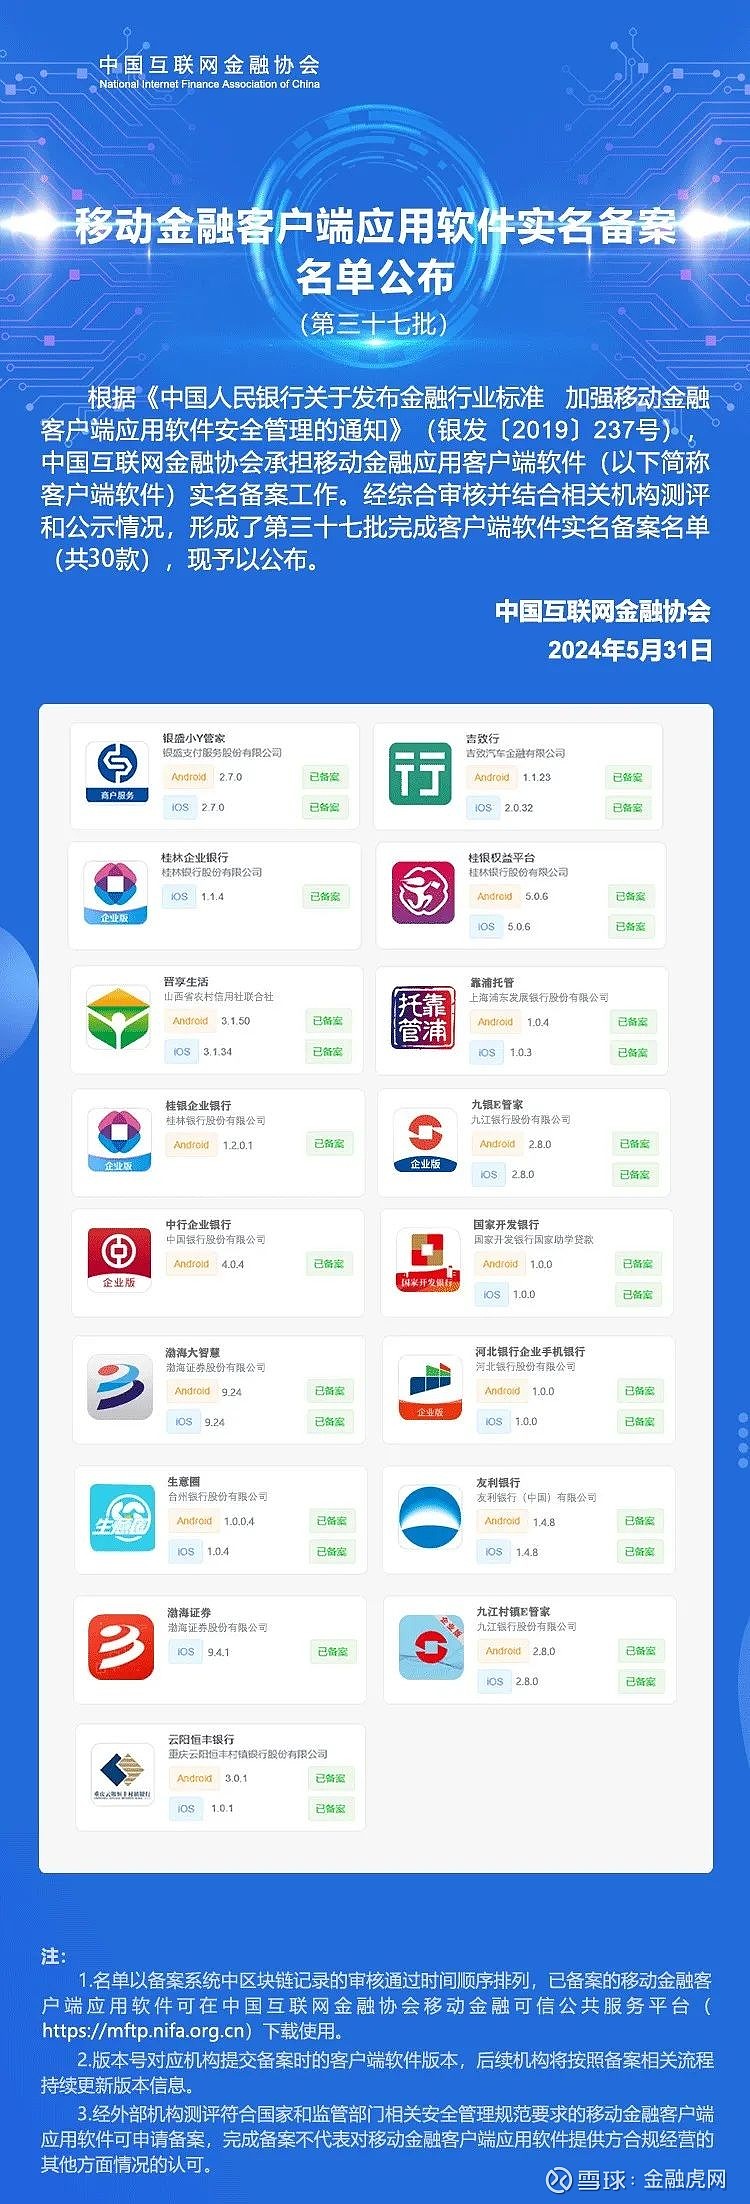 中国互金协会公布30款移动金融app实名备案名单:包含桂林企业银行,靠